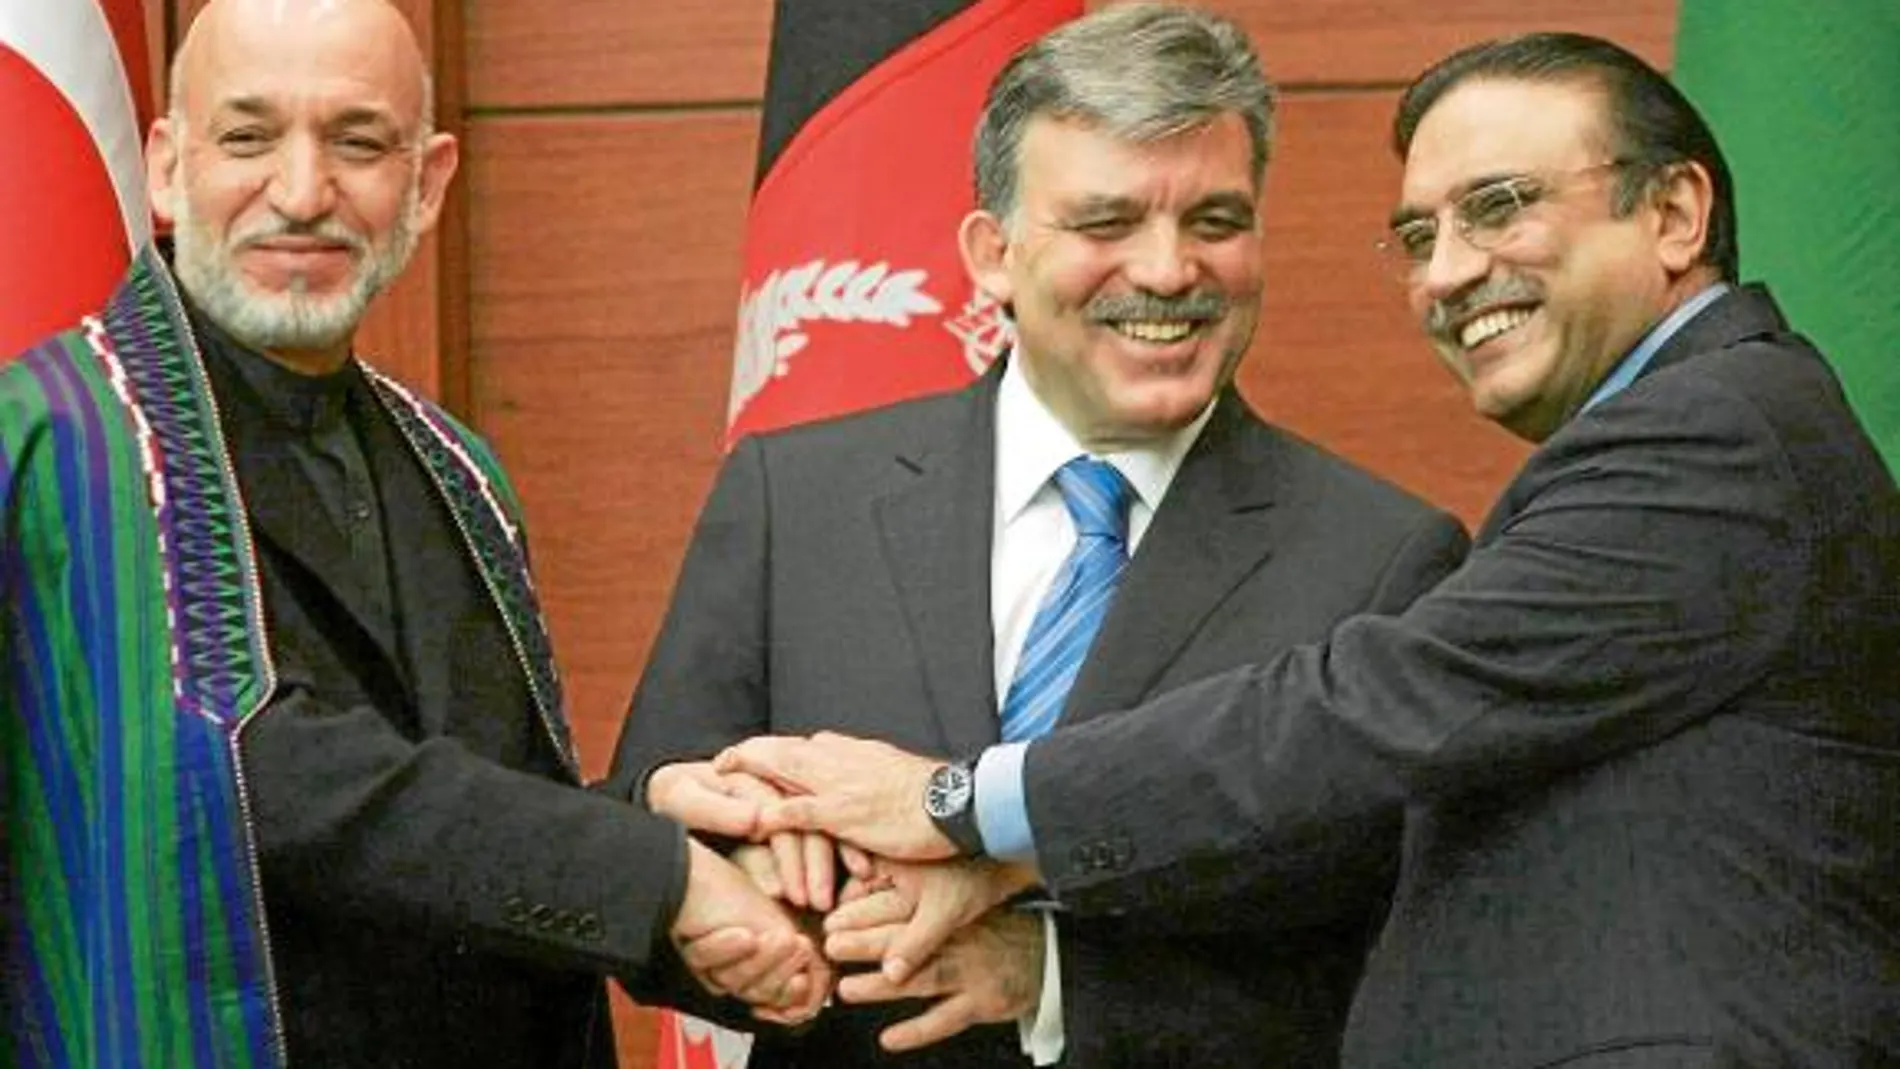 El presidente de Turquía, Abdulá Gül, junto a sus homólogos afgano y paquistaní, Hamid Karzai y Asif Ali Zerdari, respectivamente